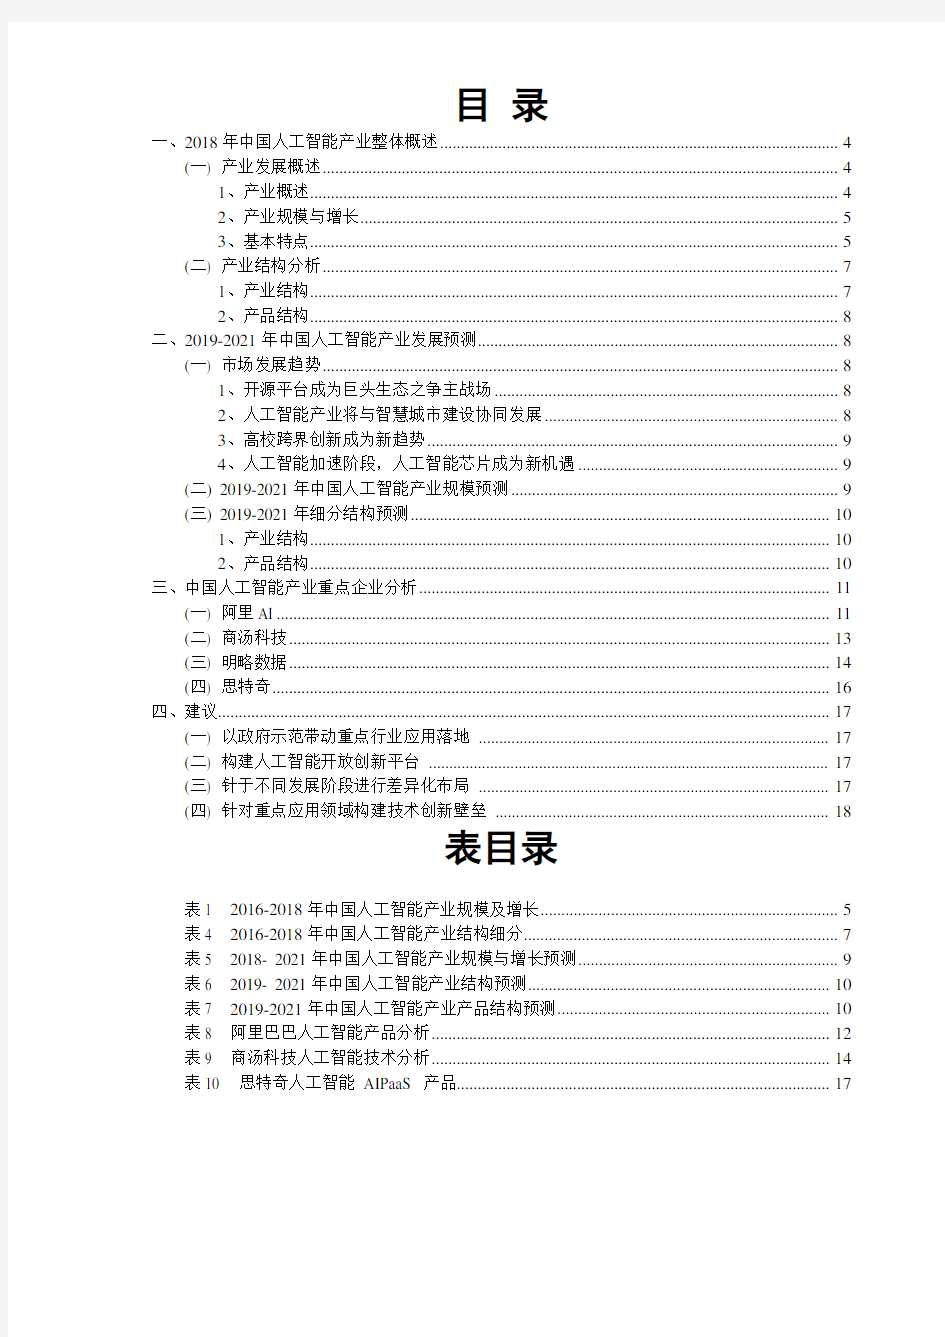 2018-2019年度中国人工智能市场研究报告